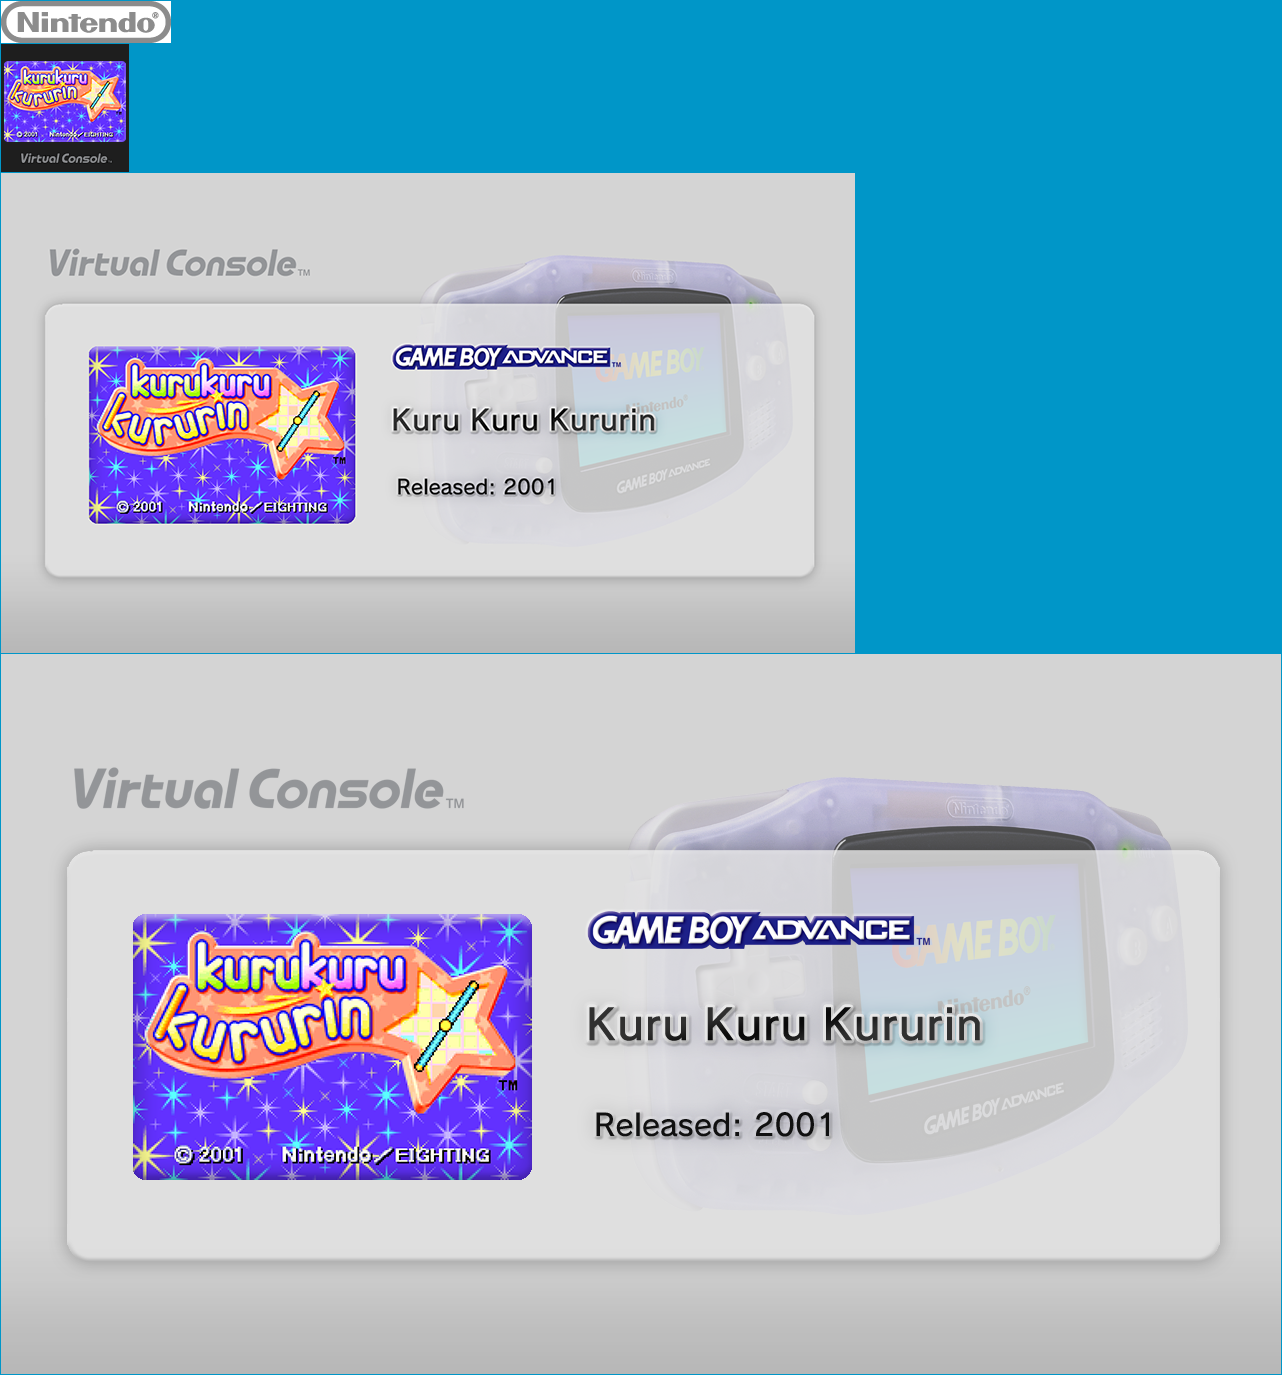 Virtual Console - Kuru Kuru Kururin